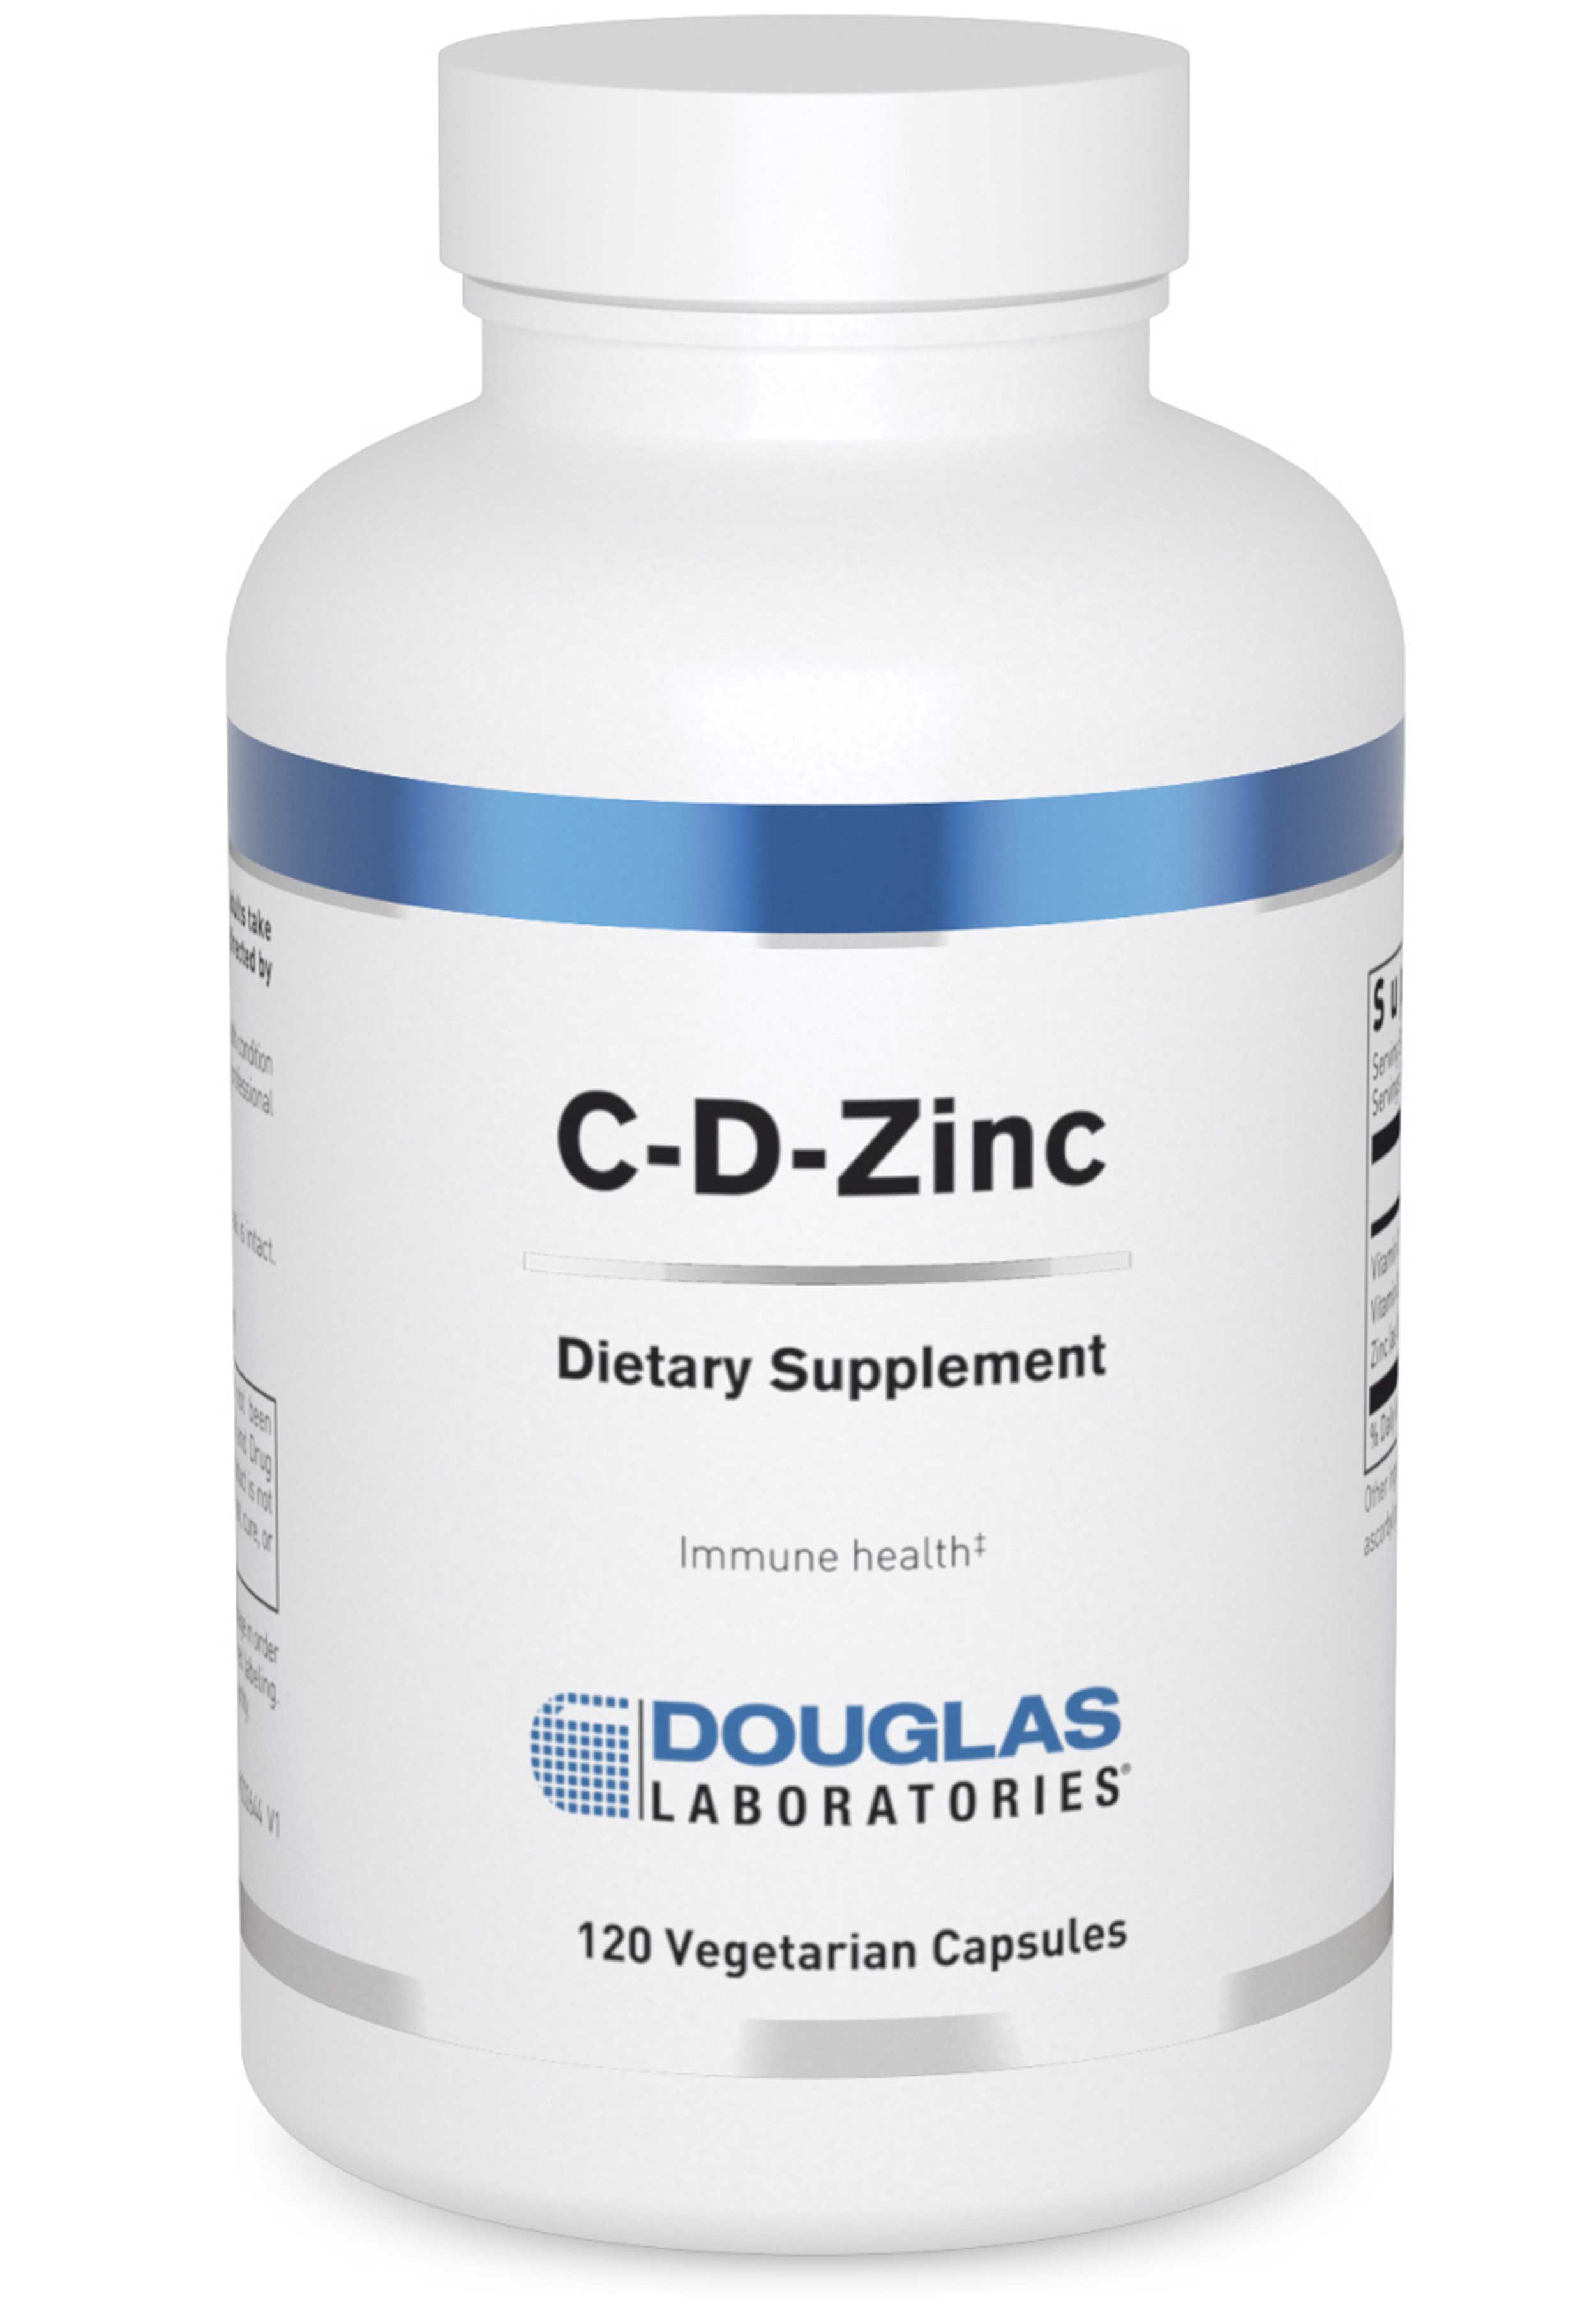 Douglas Laboratories C-D-Zinc